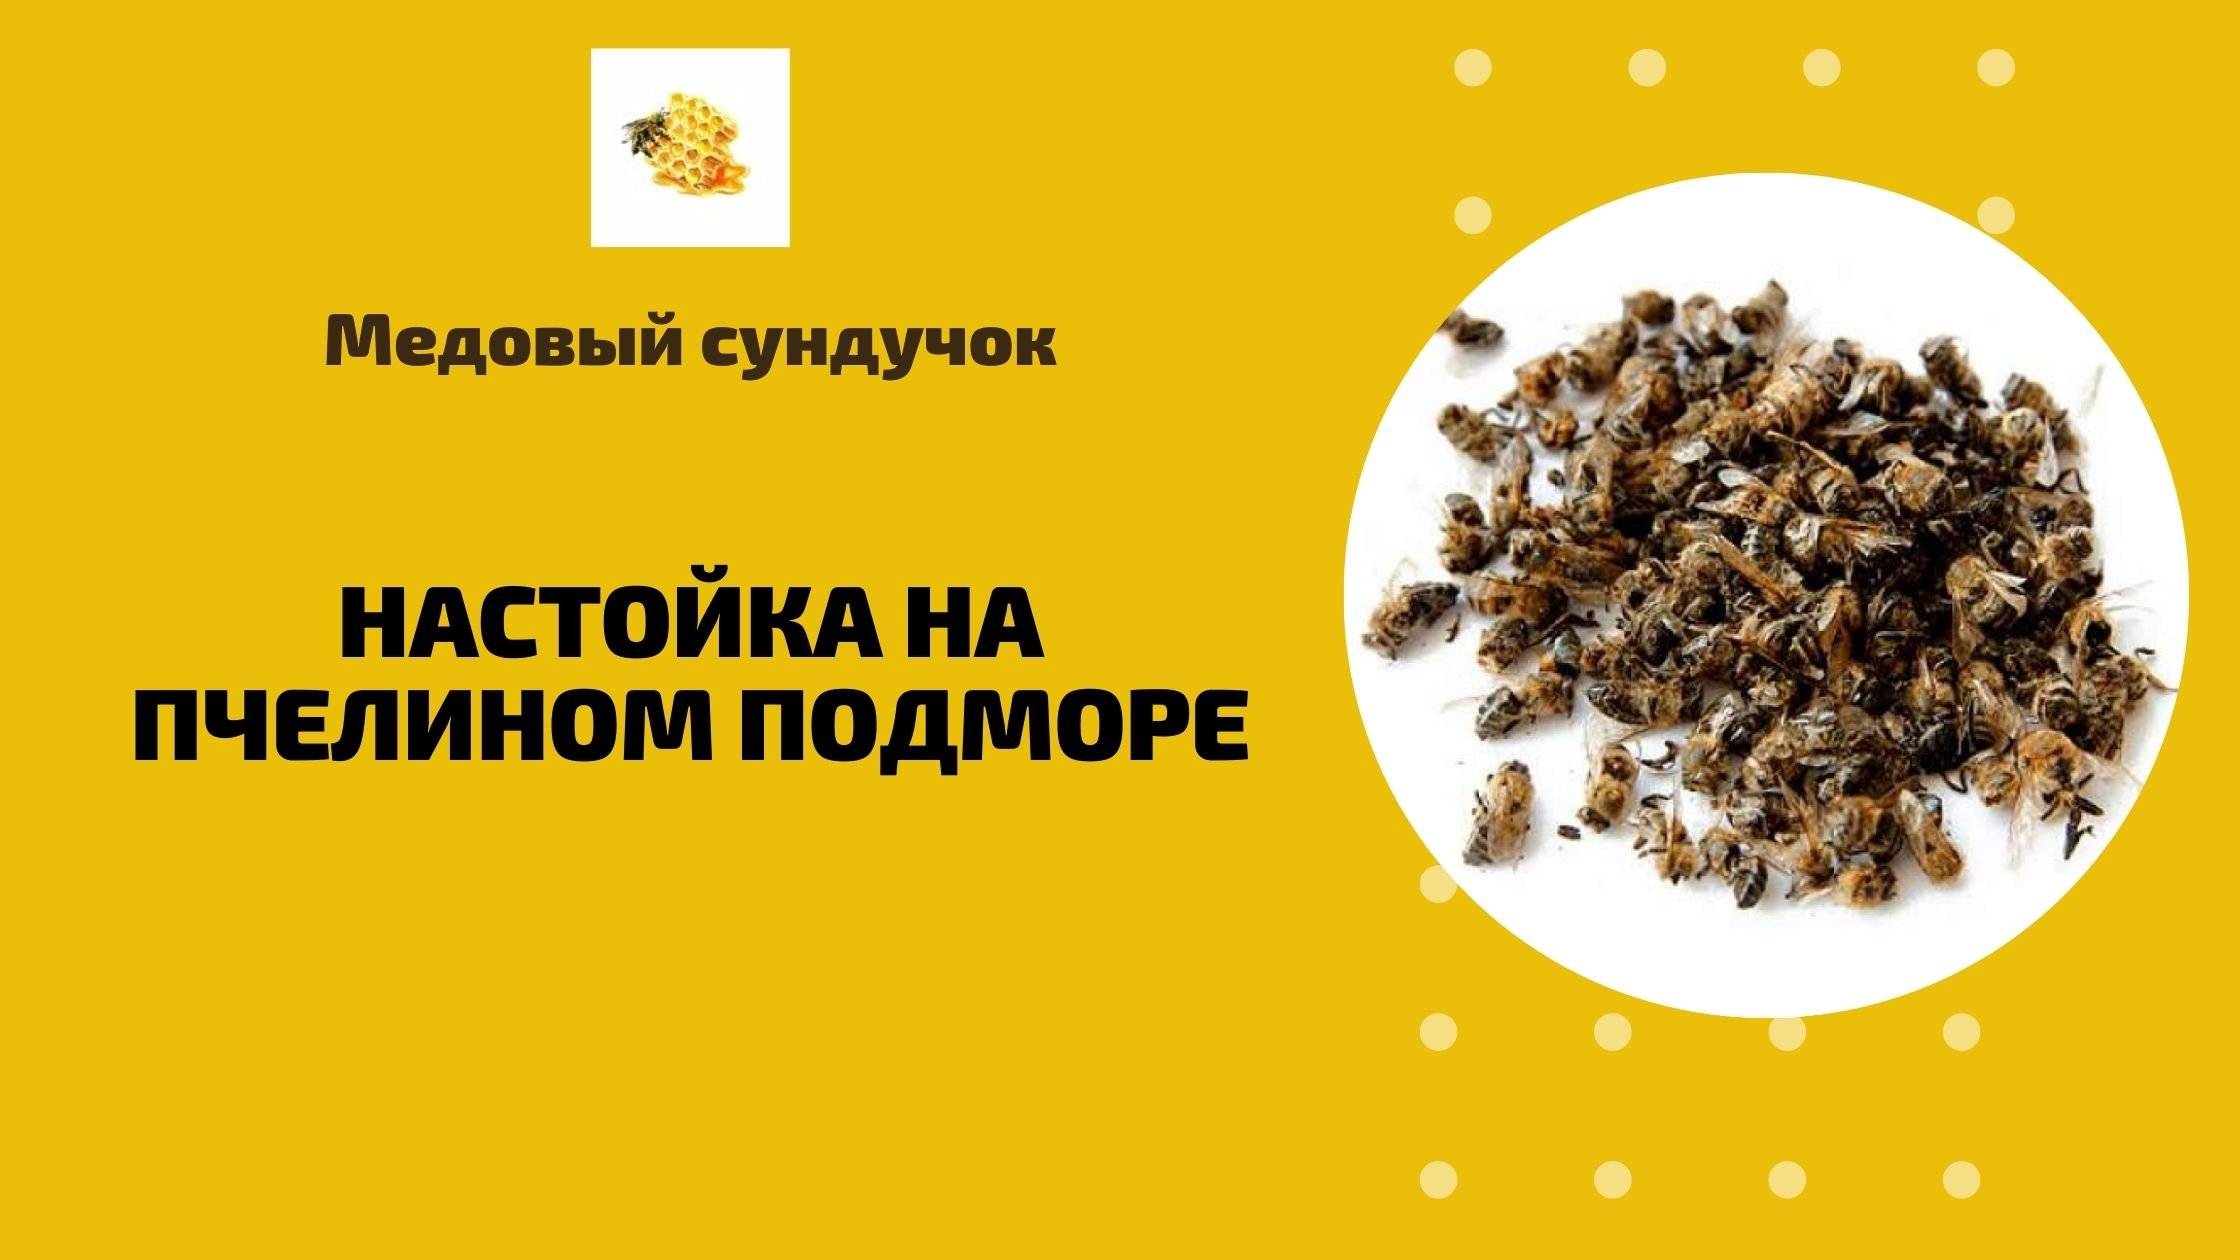 Подмор пчелиный применение для мужчин (лечение аденомы простаты)